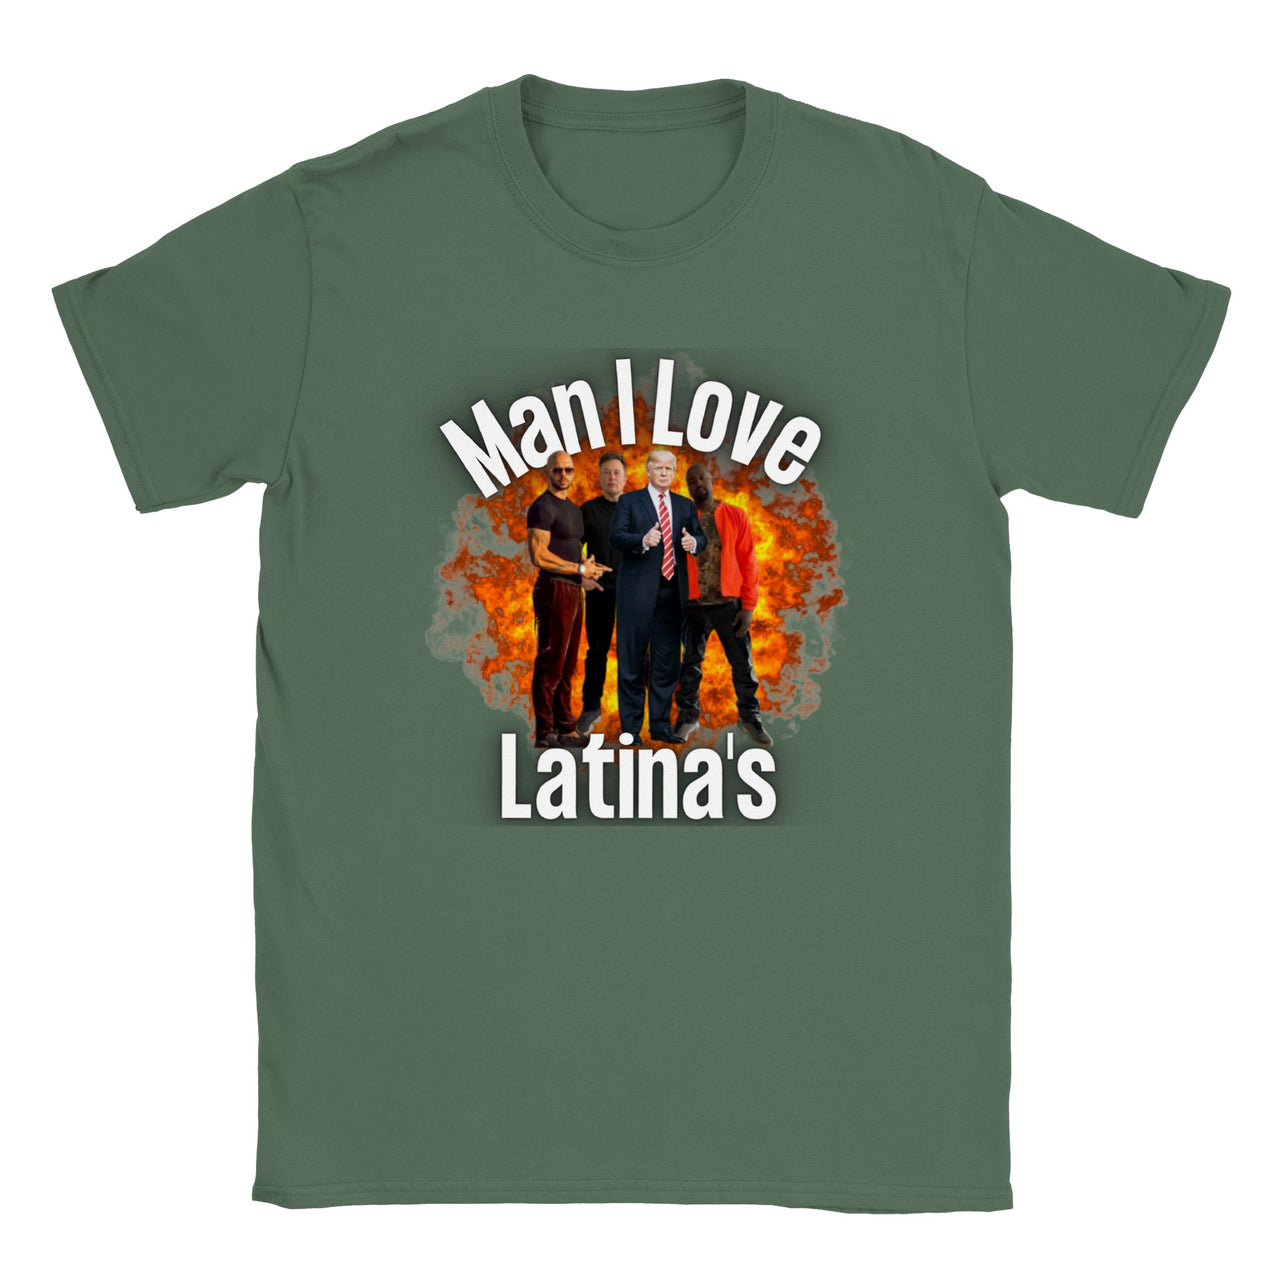 Man I Love Latina's T-Shirt